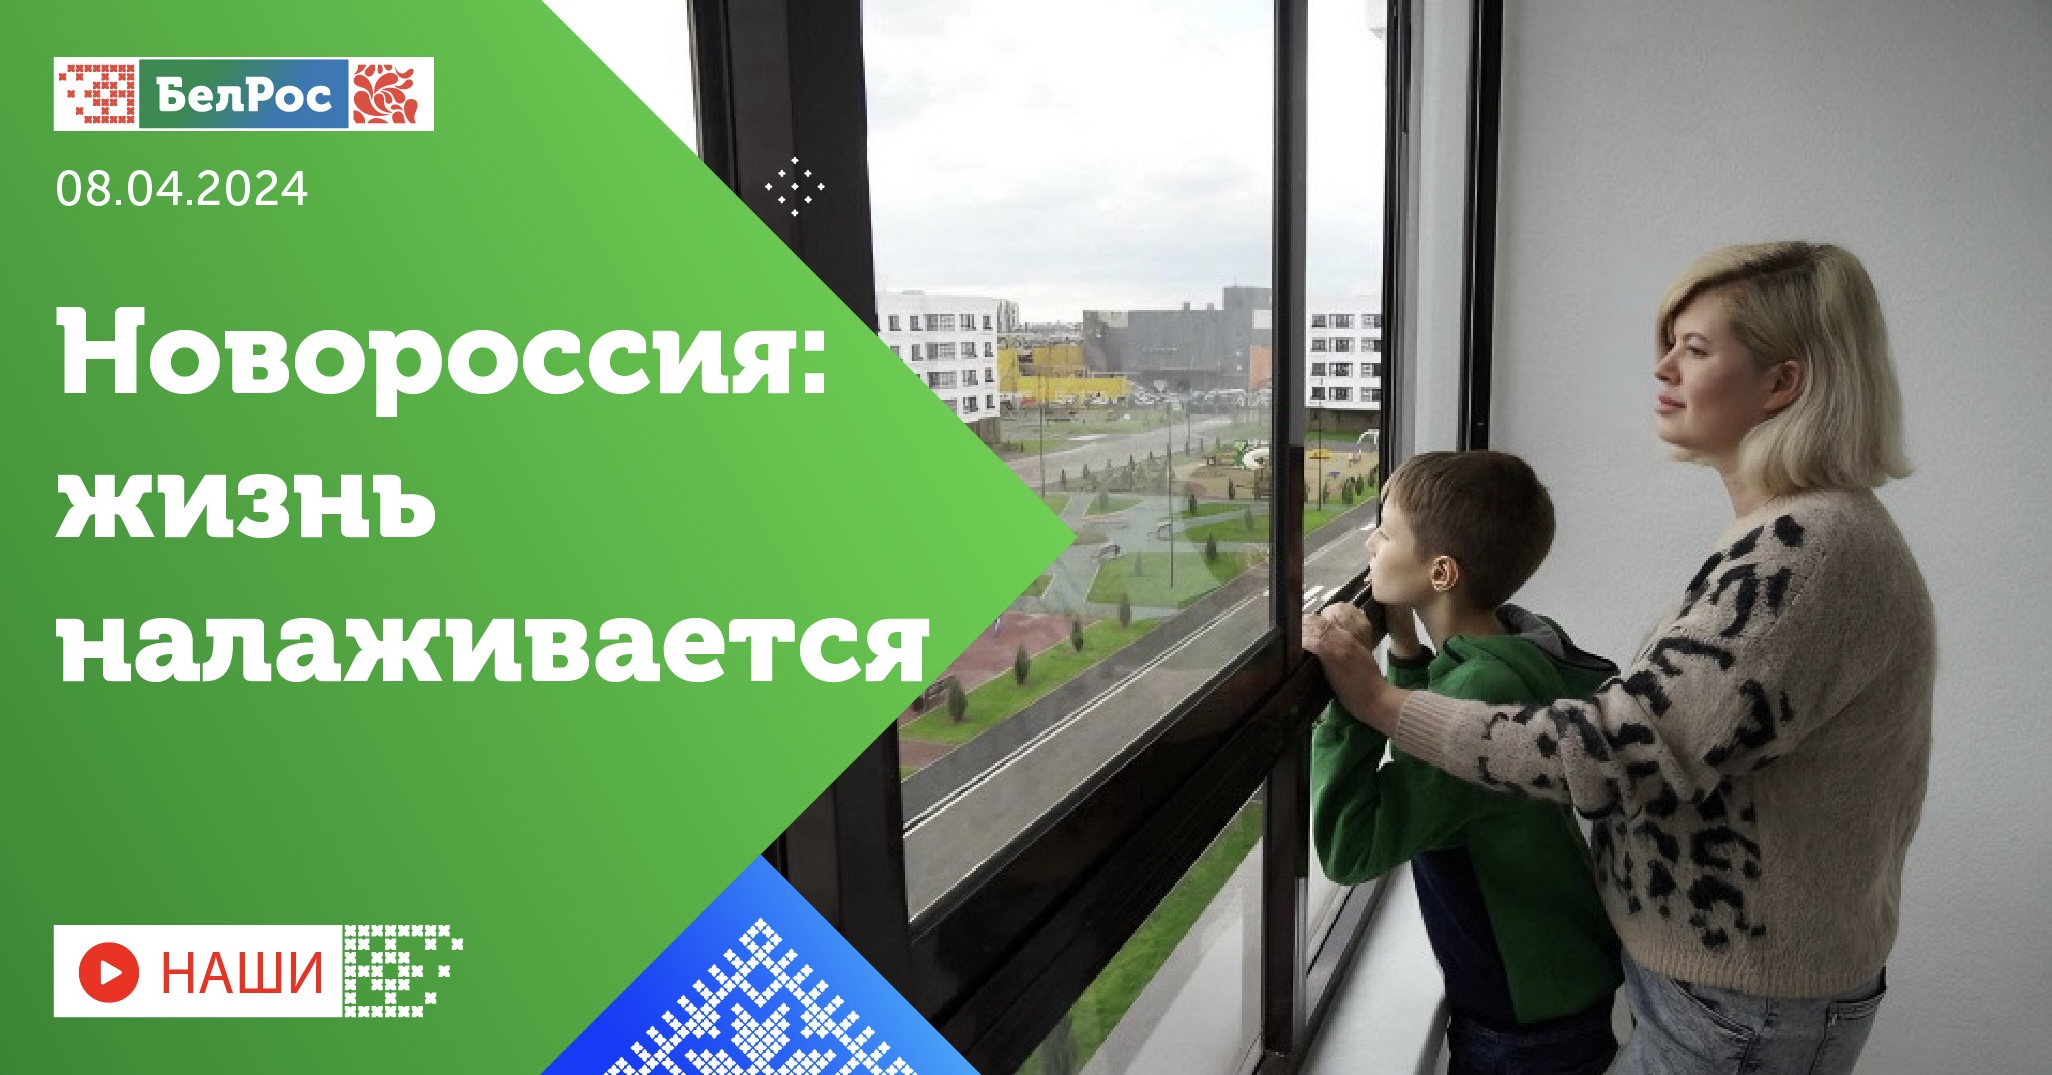 Смотрите новый выпуск программы "НАШИ" о восстановлении новых регионов России  